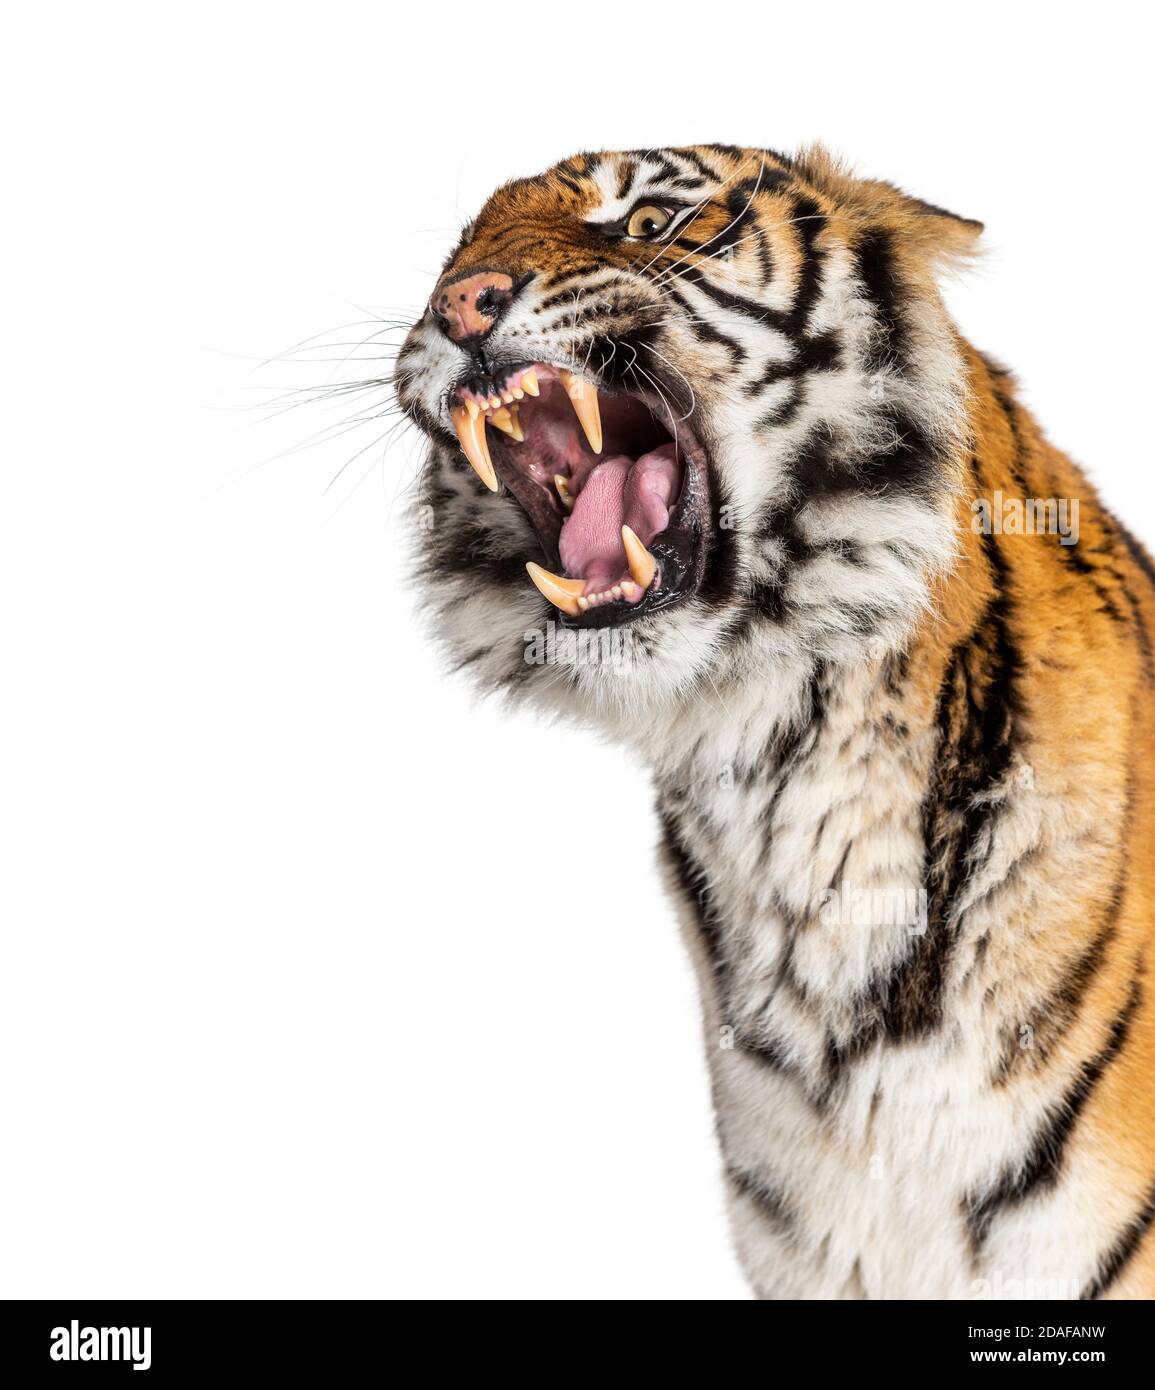 Nahaufnahme des Kopfes eines Tigers, der wütend aussieht und seinen Zahn zeigt Stockfoto